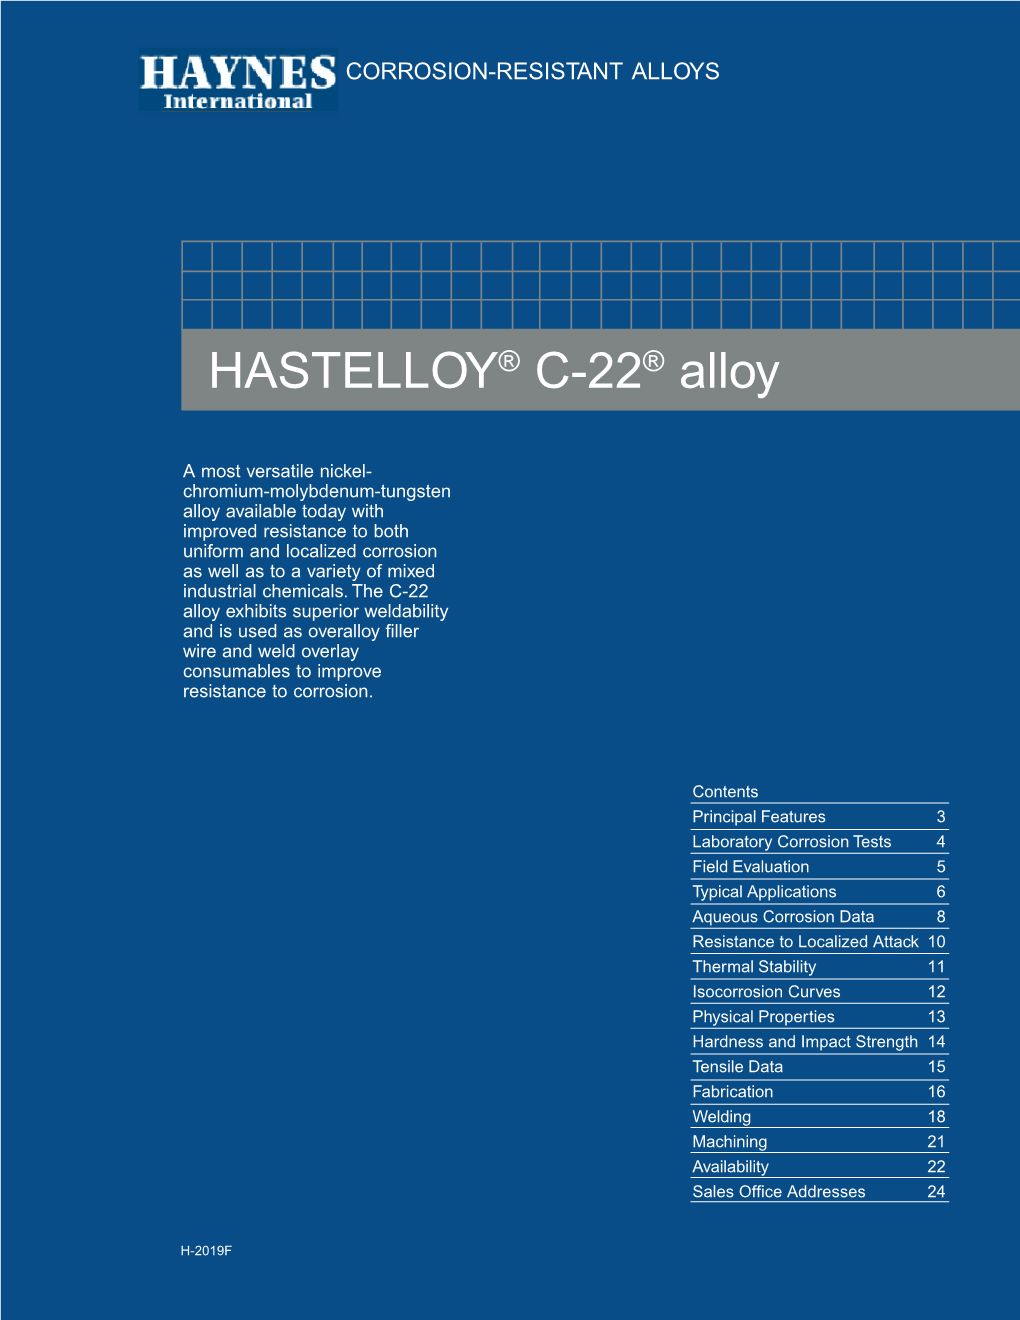 HASTELLOY® C-22® Alloy